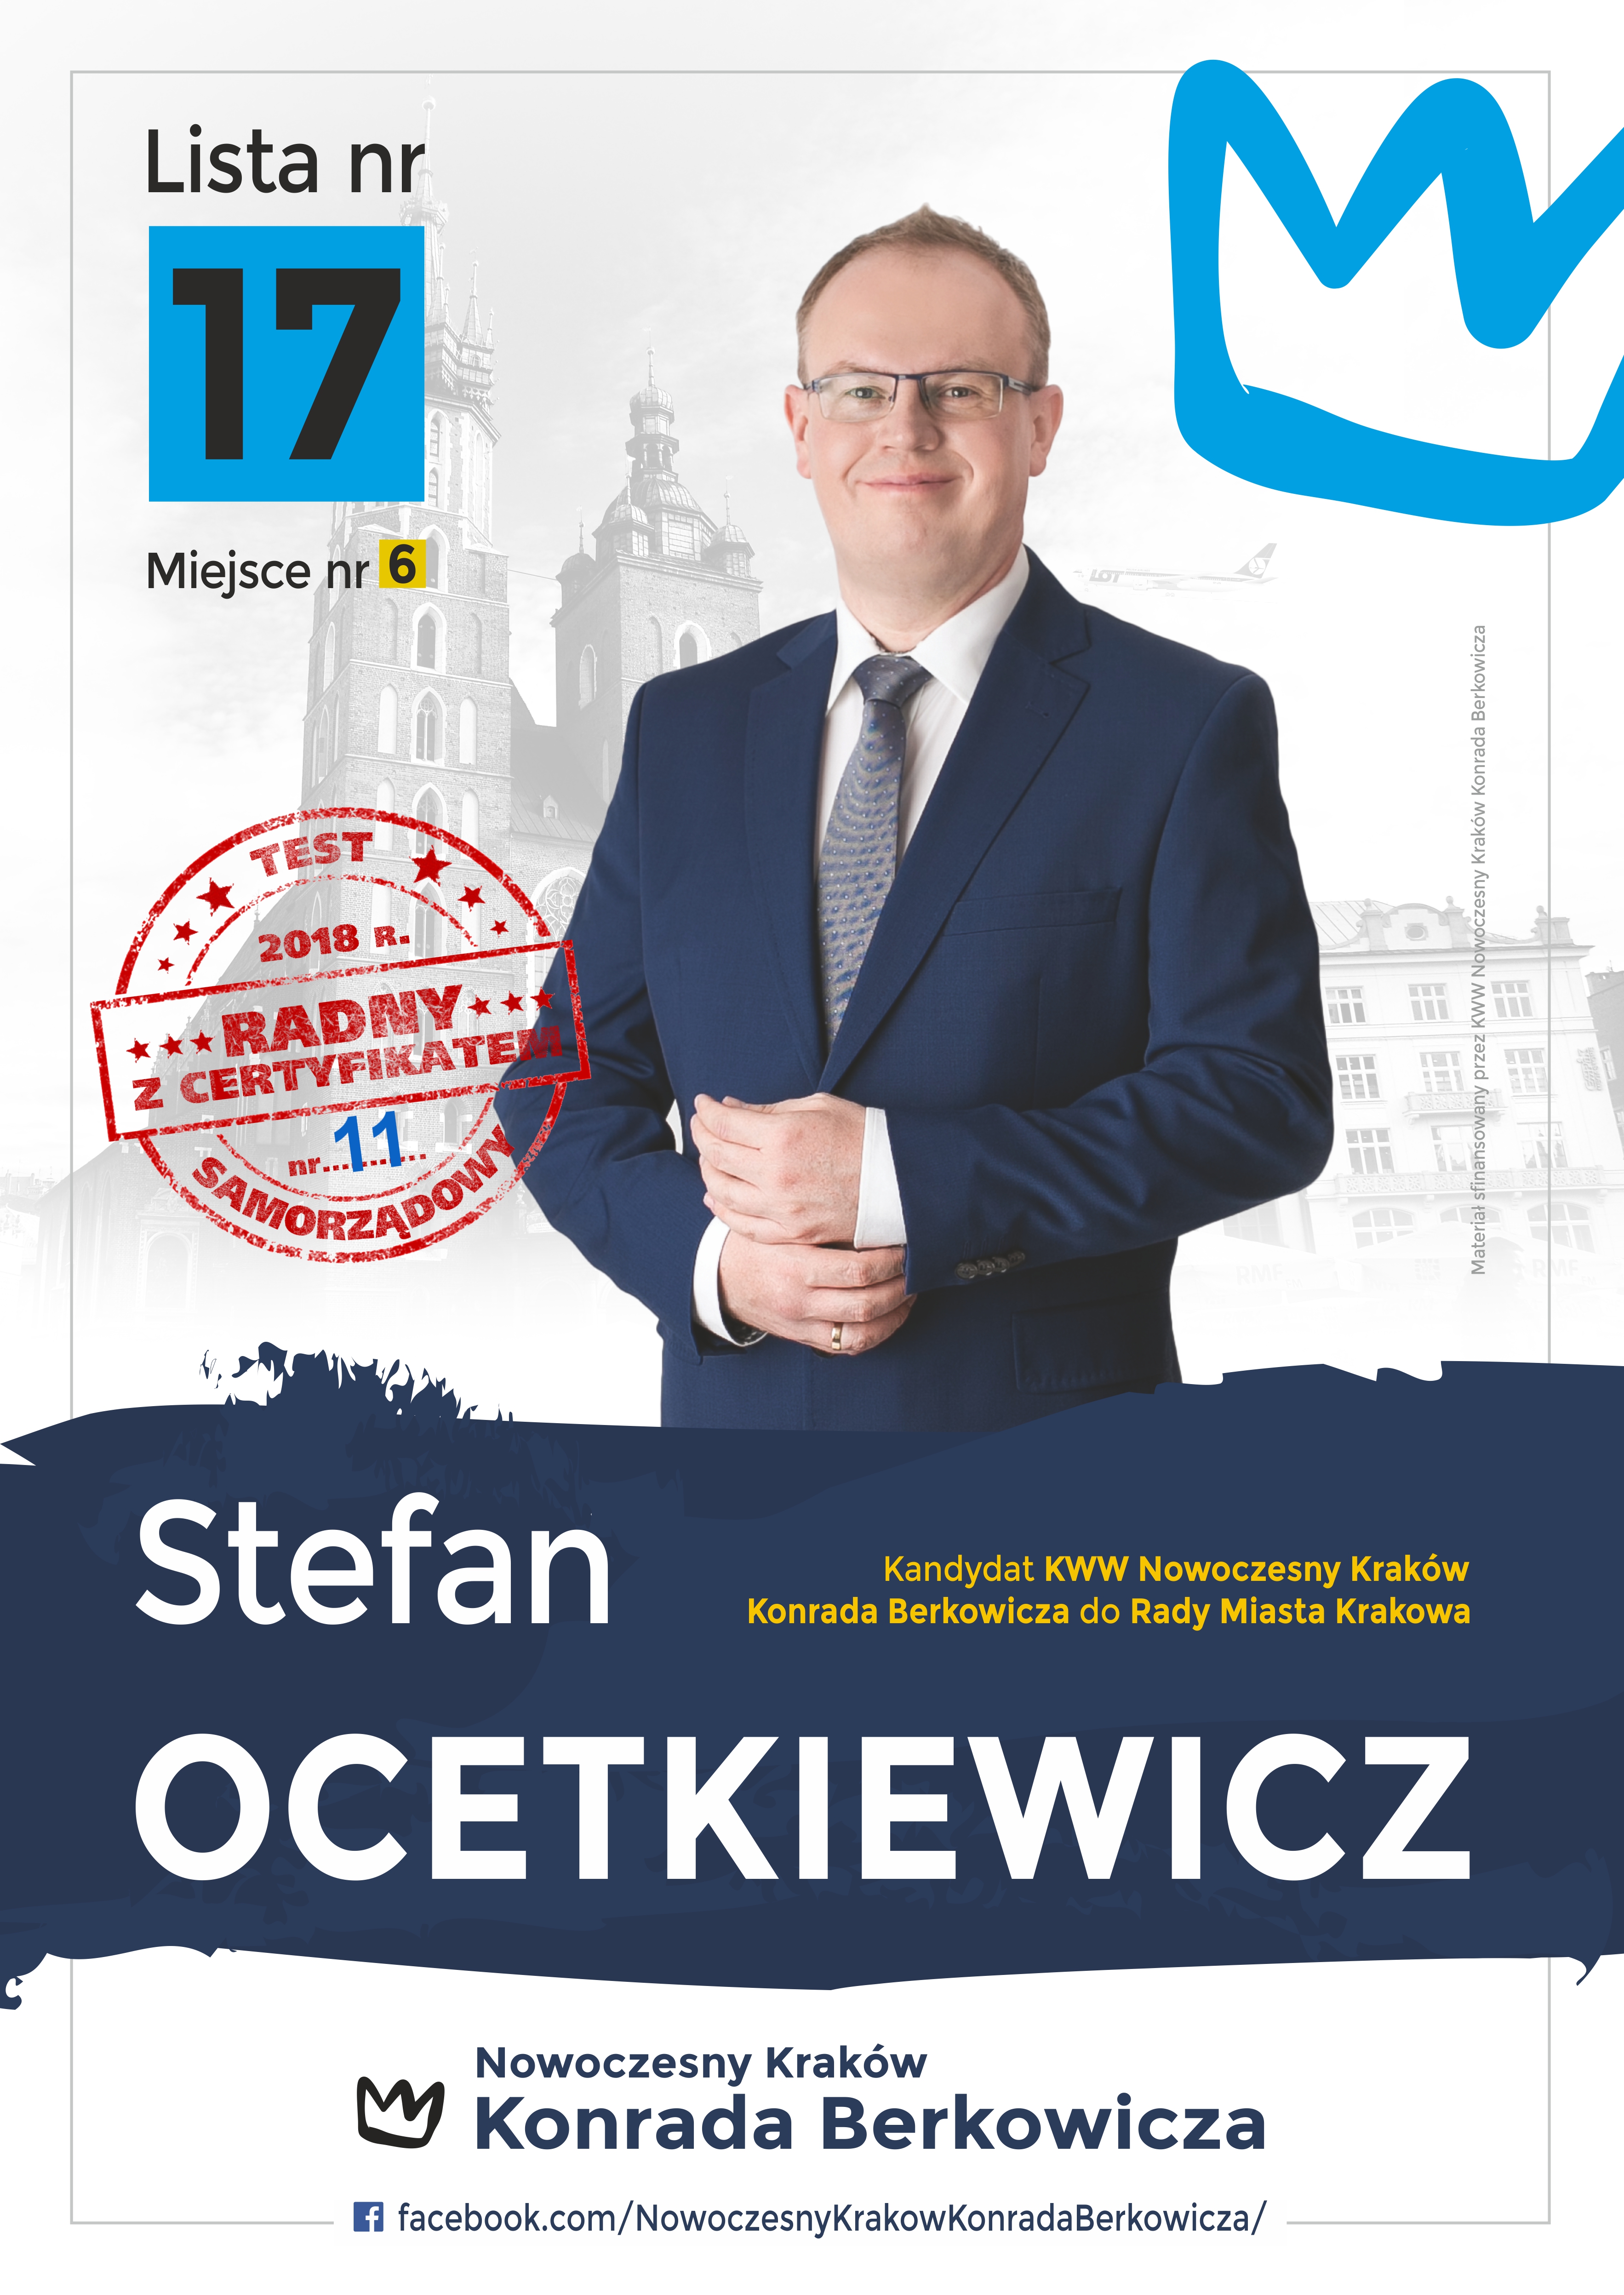 Stefan Ocetkiewicz - kandydat do Rady Miasta Krakowa - okręg 2, lista 17, miejsce 6